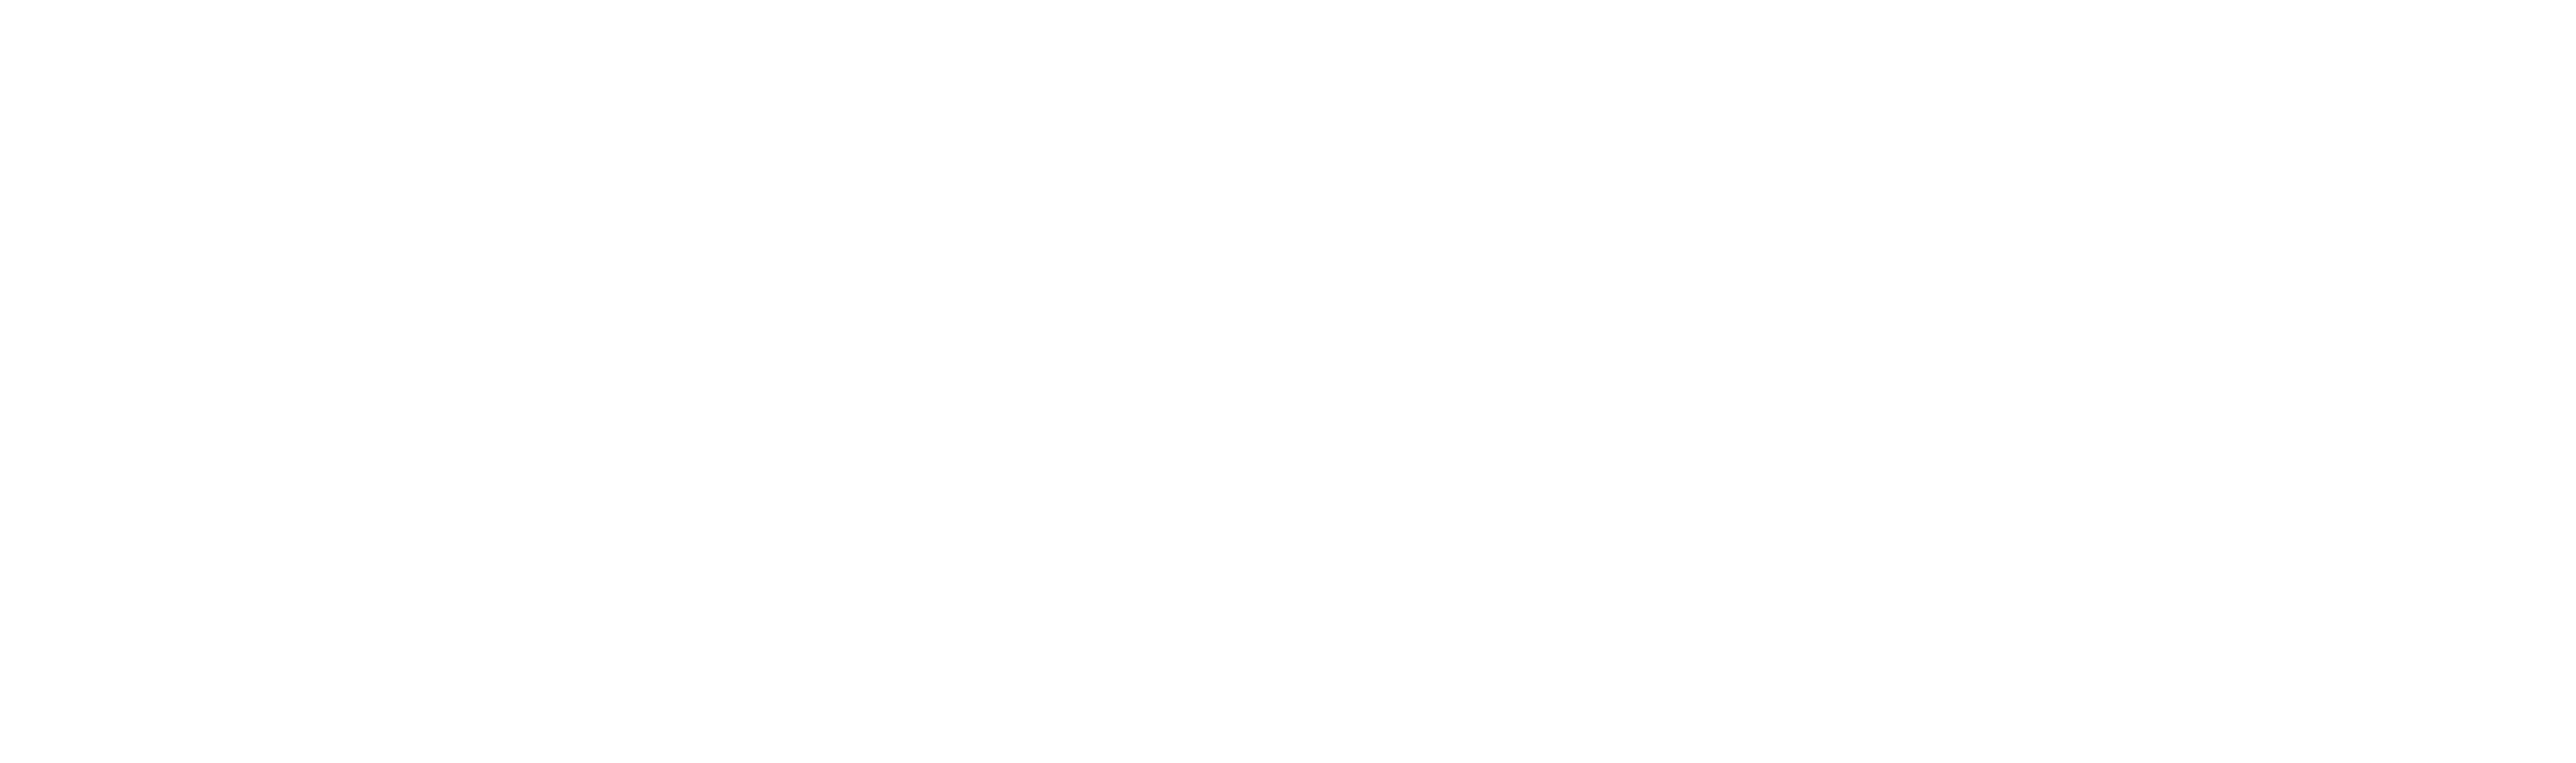 Bunert-running-store